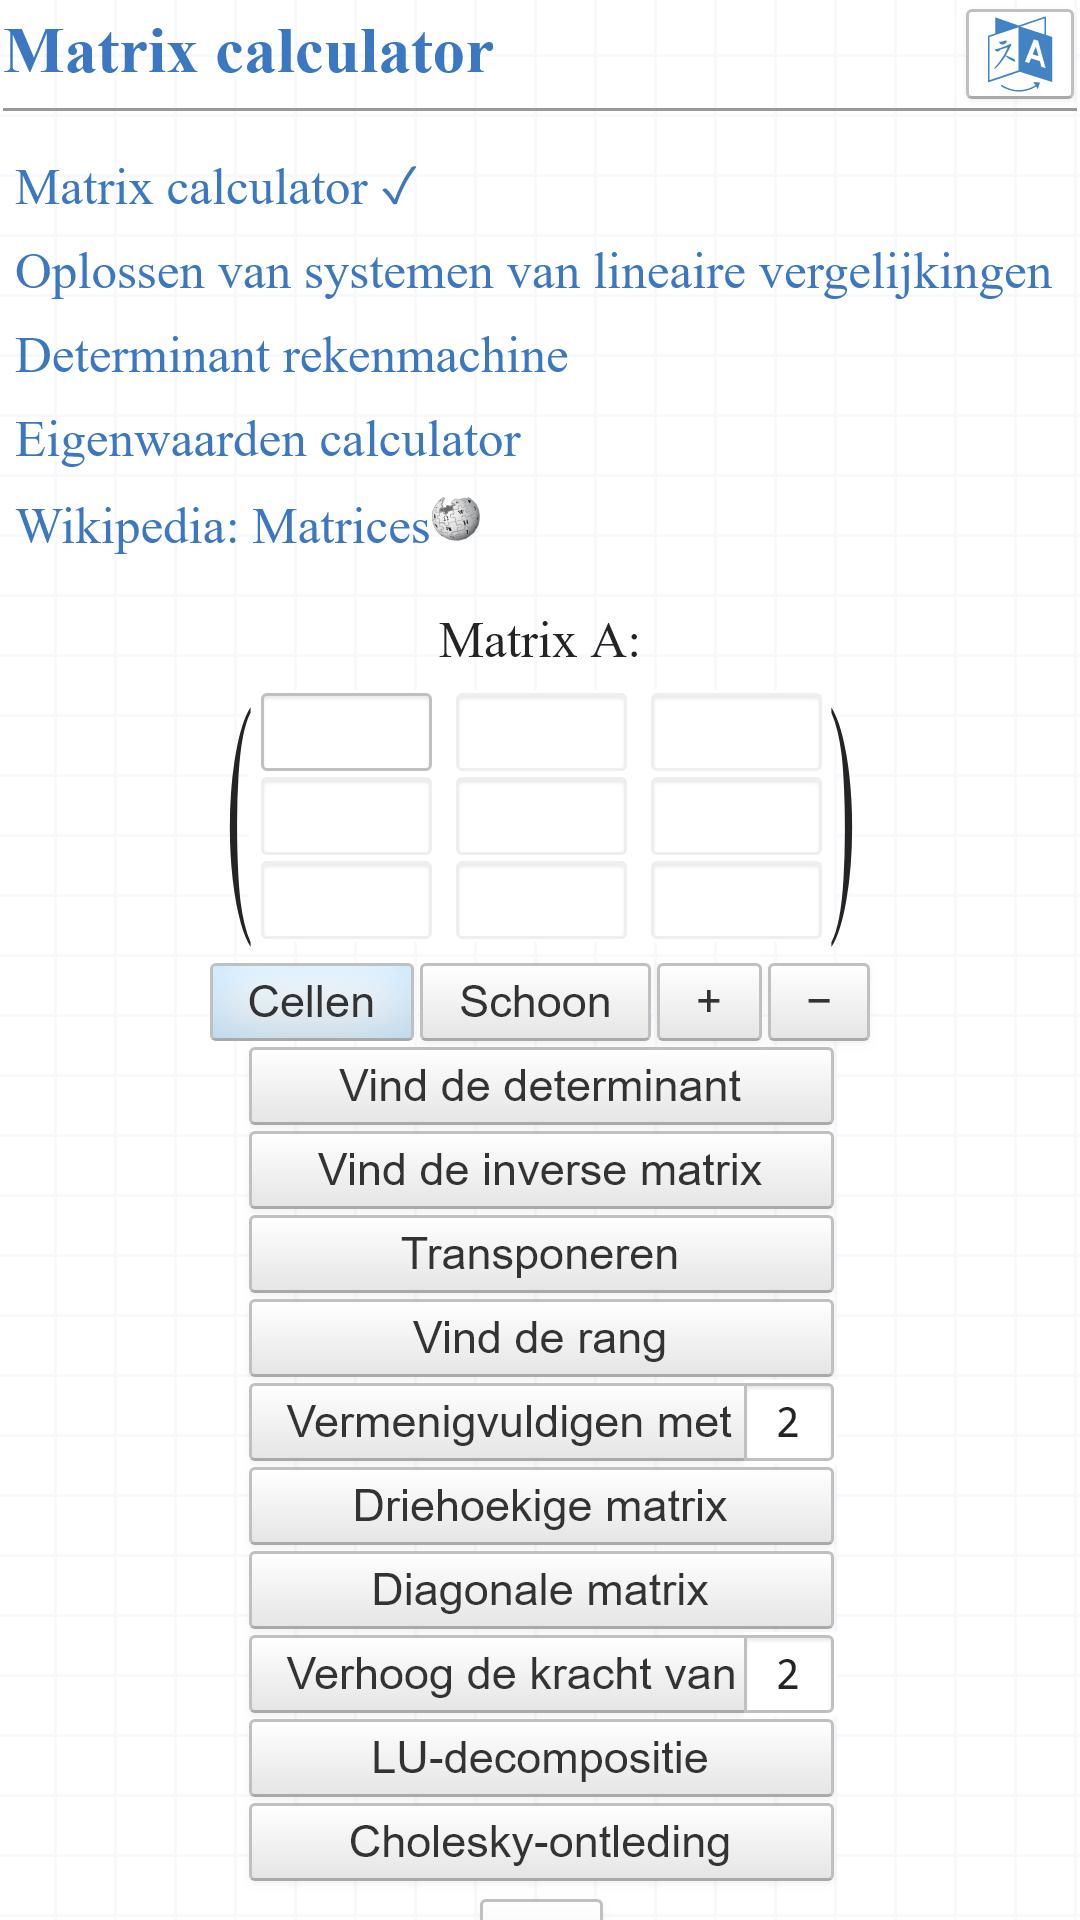 Matrix calculator APK voor Android Download